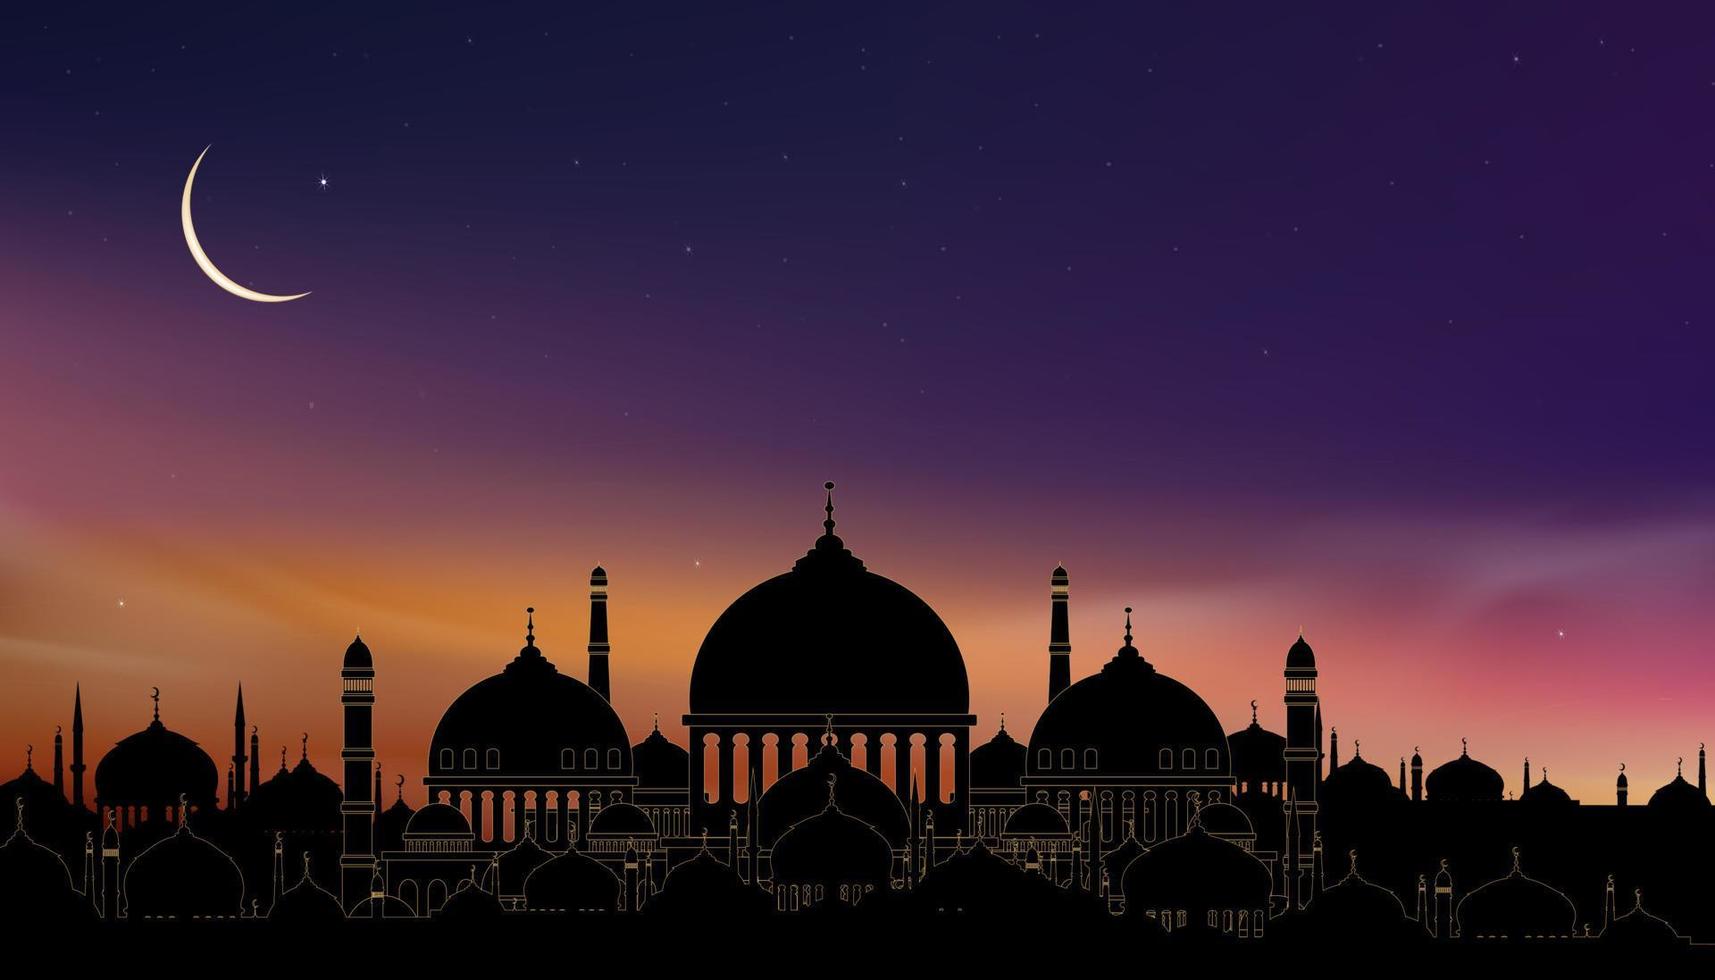 ramadan kort med moskéer kupol, halvmåne måne på blå himmel bakgrund, vertikal baner ramadan natt med skymning skymning himmel för islamic religion, eid al adha, eid mubarak, eid al fitr,ramadan kareem vektor